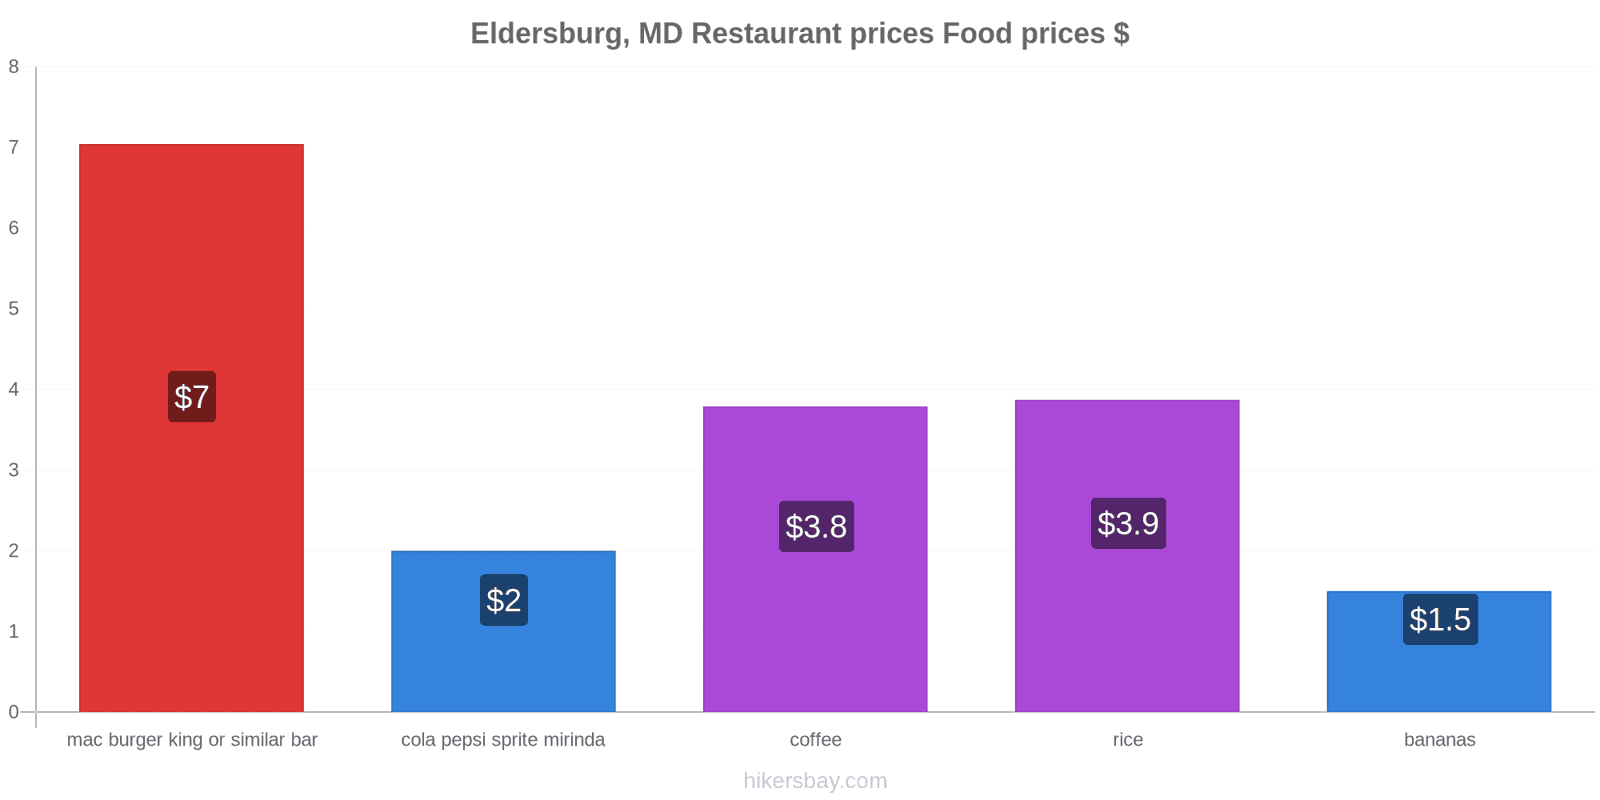 Eldersburg, MD price changes hikersbay.com